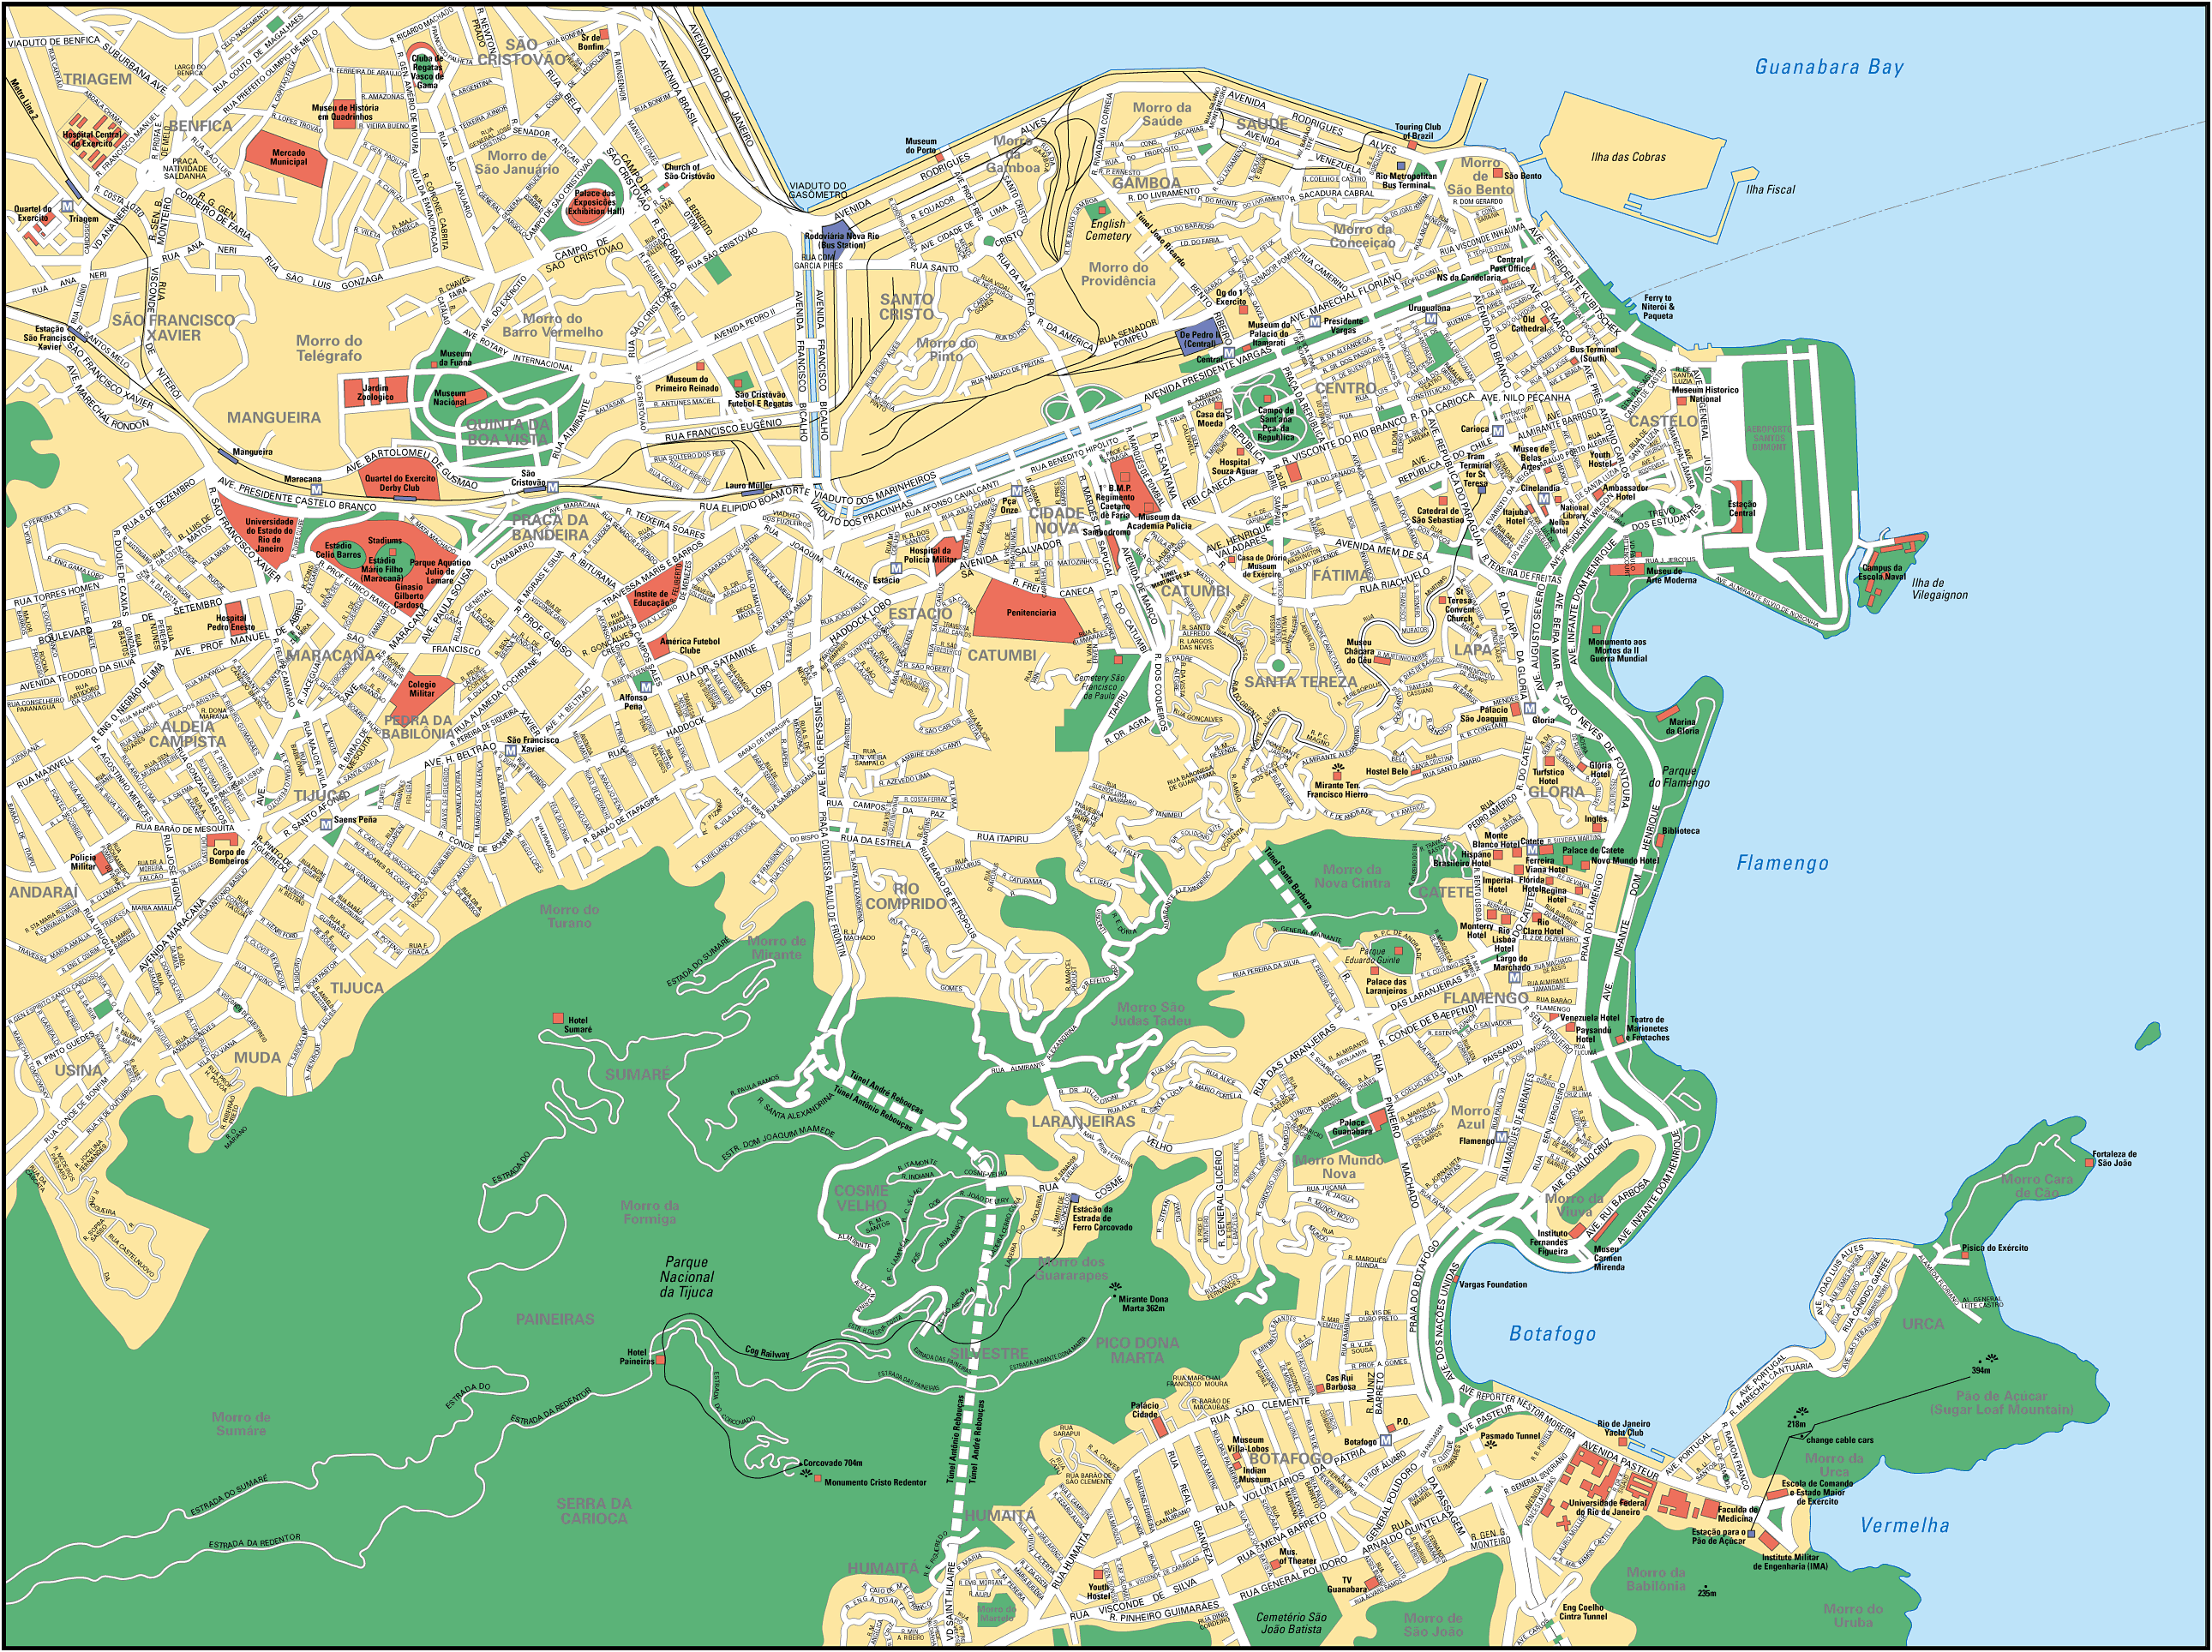 Map of Rio de Janeiro